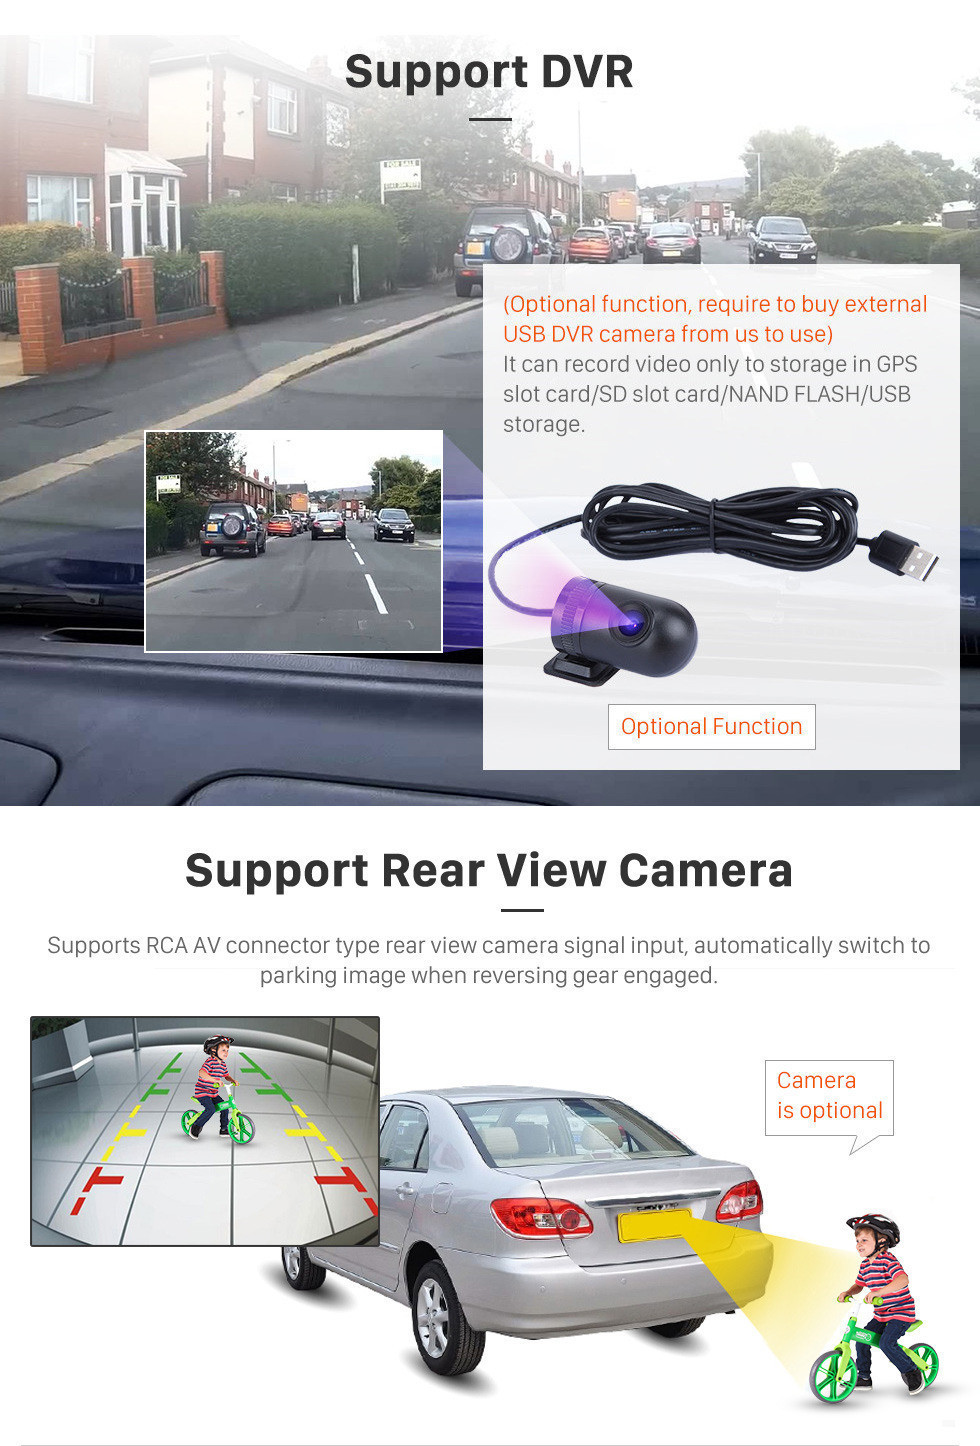 Seicane 9-дюймовый Android 13.0 GPS-навигационная система с сенсорным экраном для 2011-2014 KIA Morning Picanto Поддержка радио Bluetooth TPMS DVR OBD Mirror Link 3G WiFi TV Резервная камера Видео 